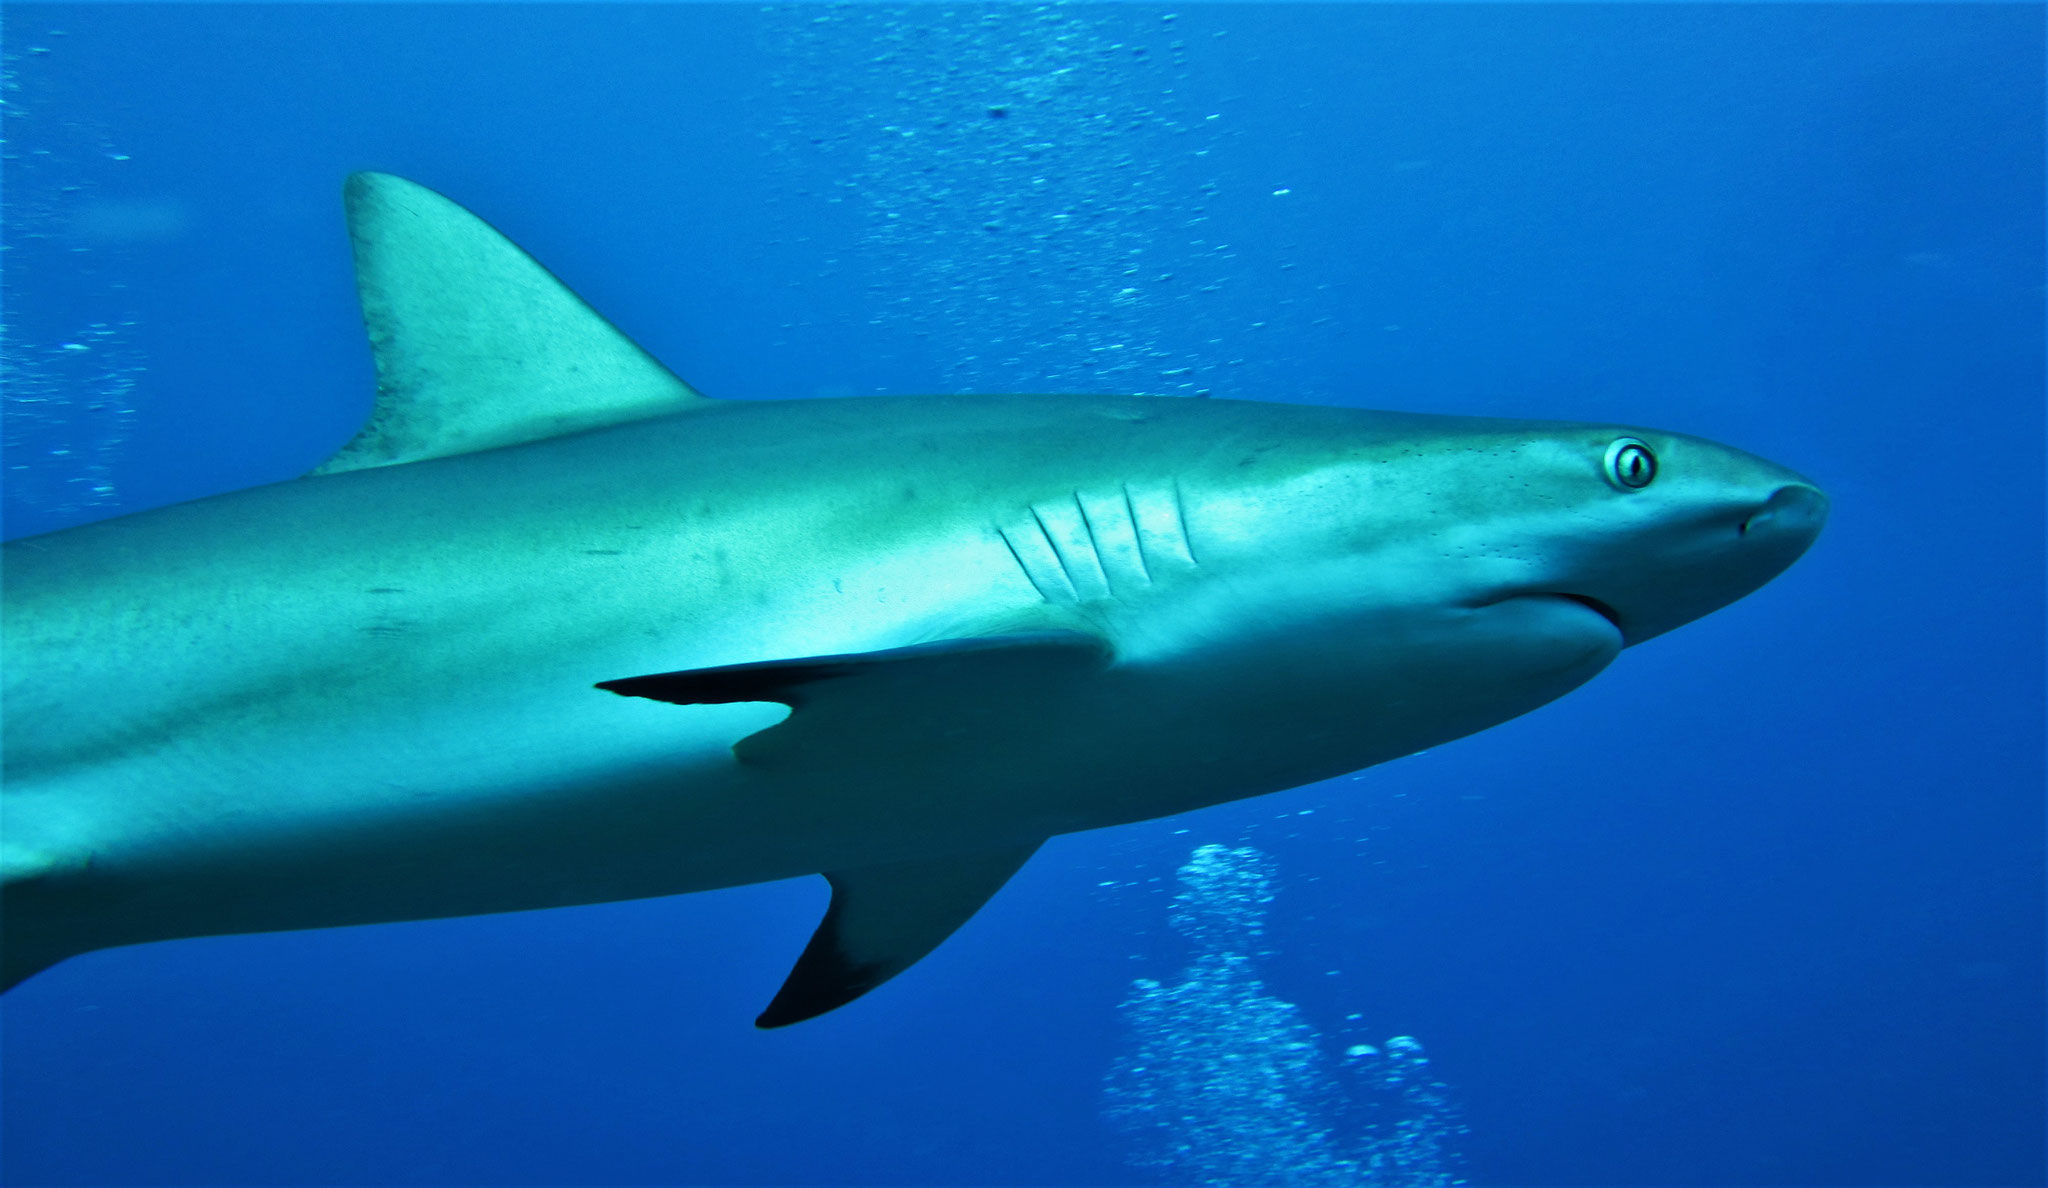 caribbean reef shark - pic by Markus Jimi Ivan - www.jimiivan.at